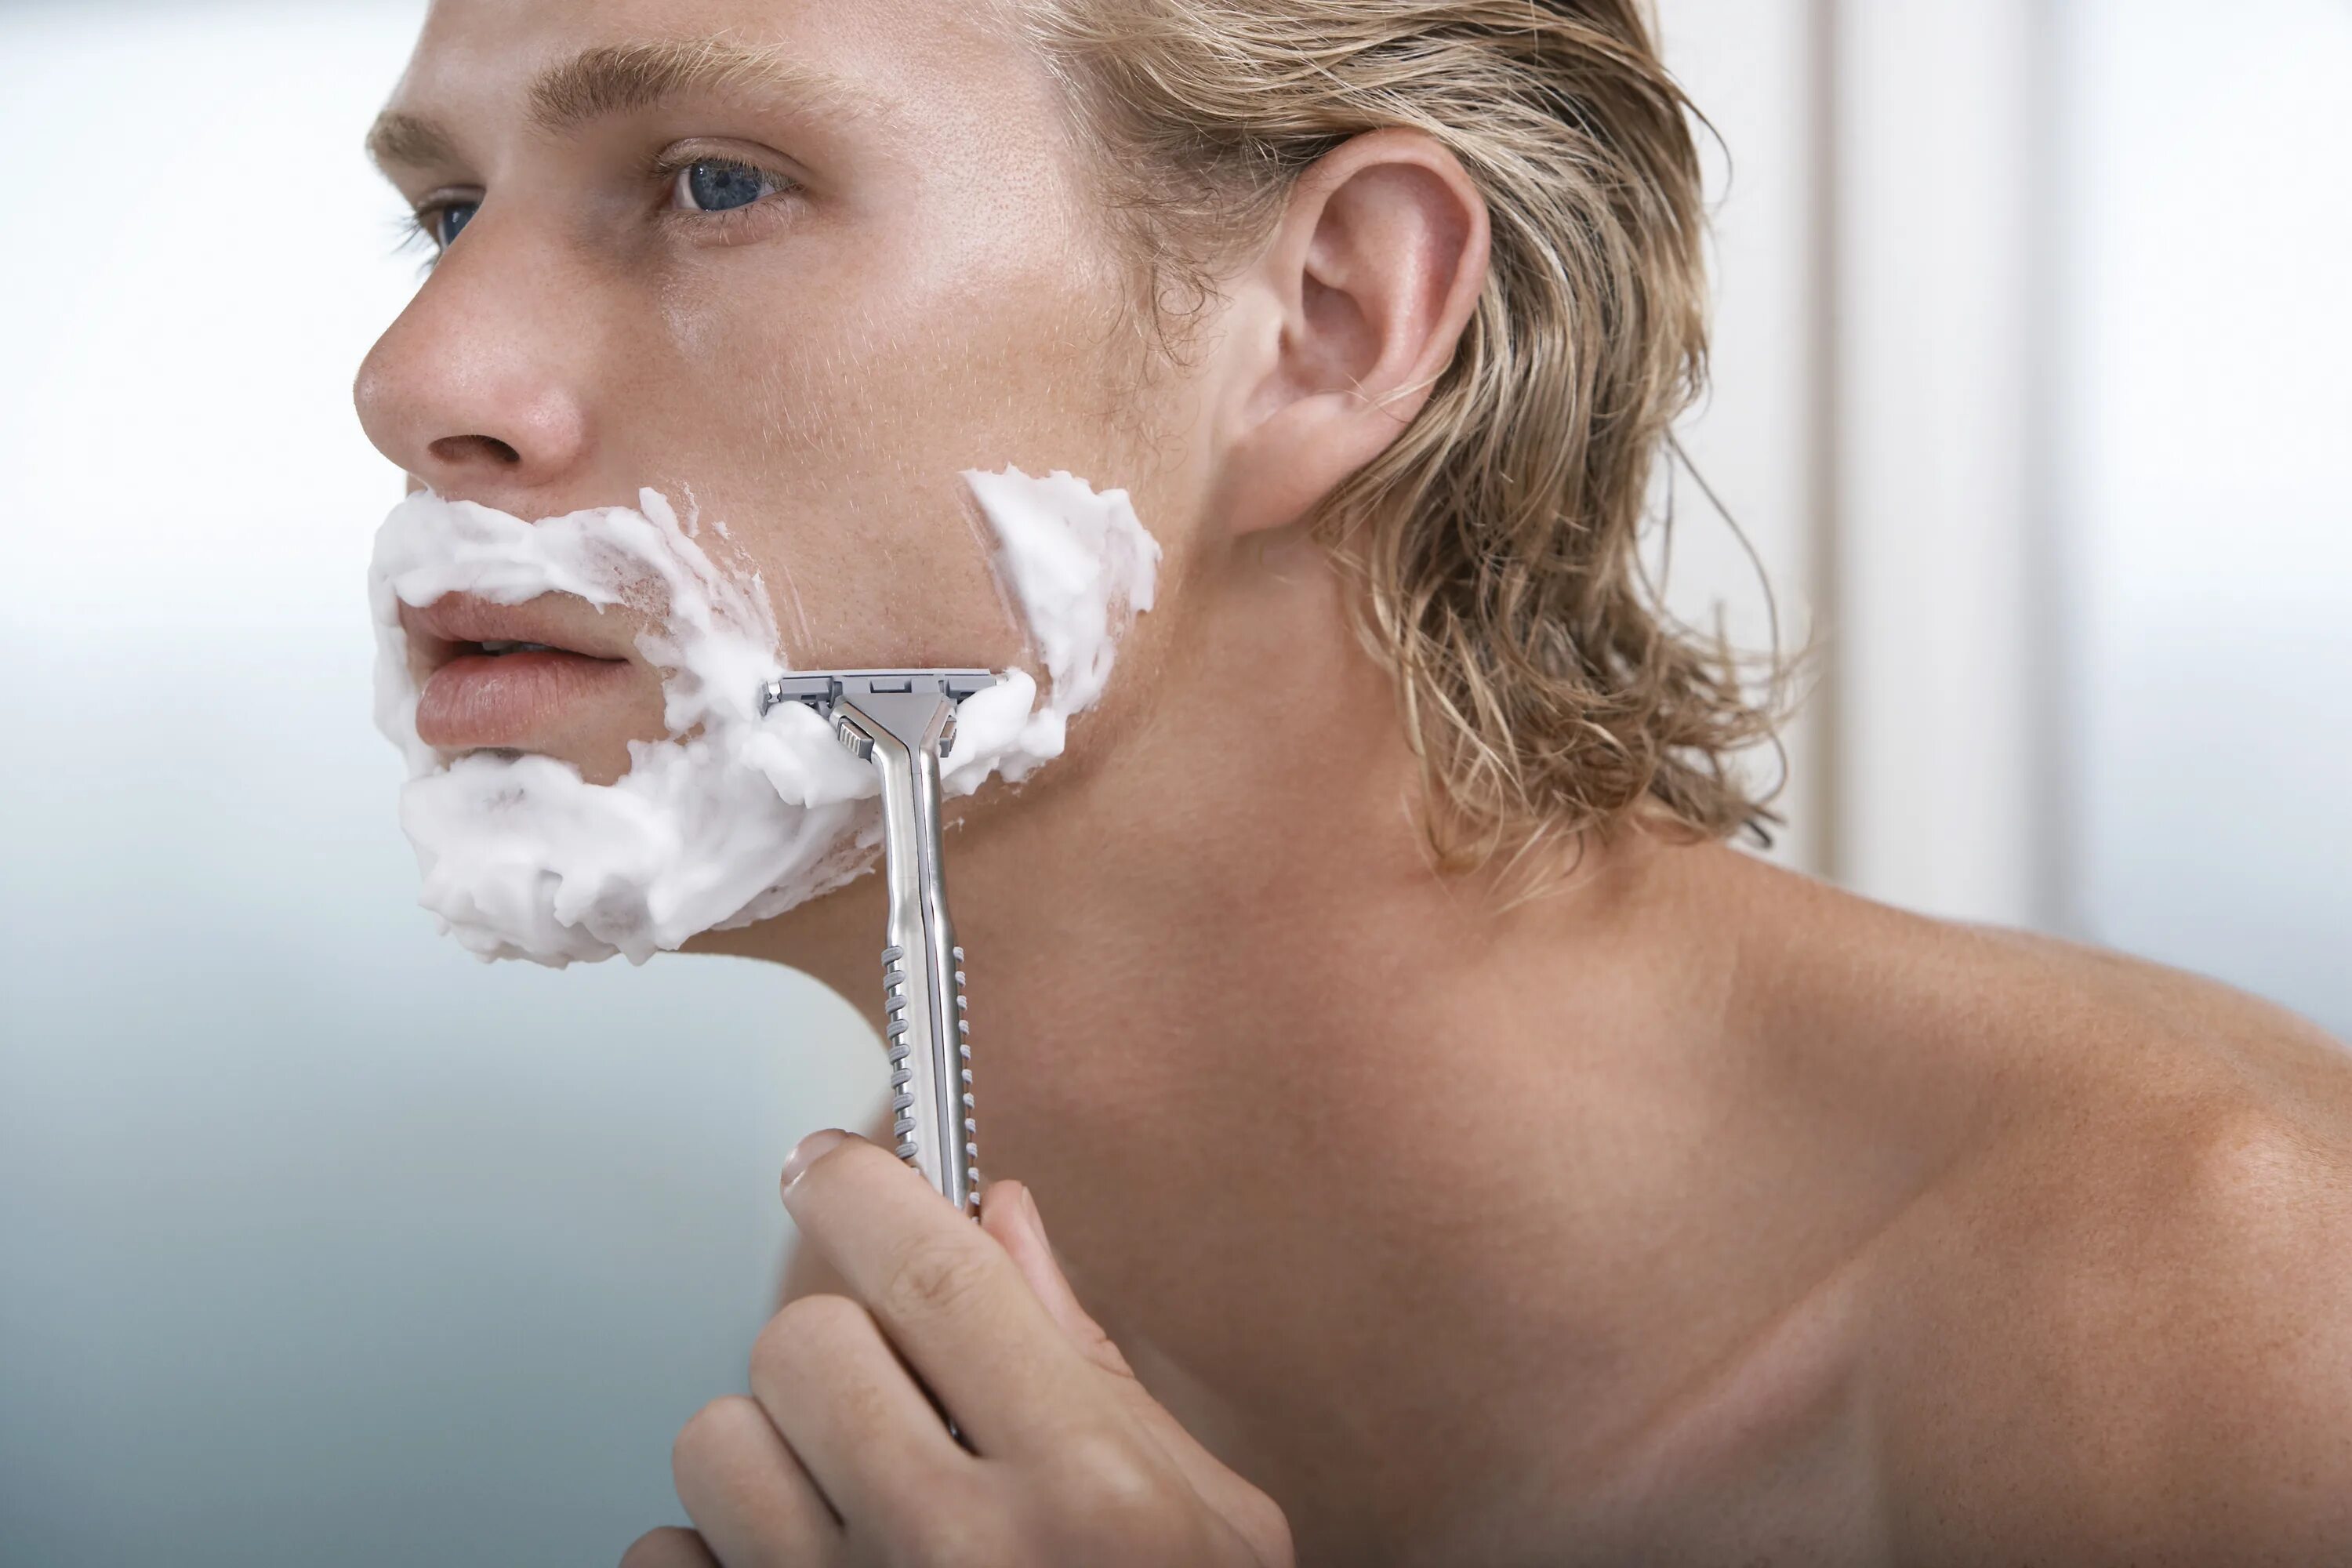 Мужчины бреет видео. Бритье лица. Мужское бритье лица. Станок для бритья. Мужчина бреется.